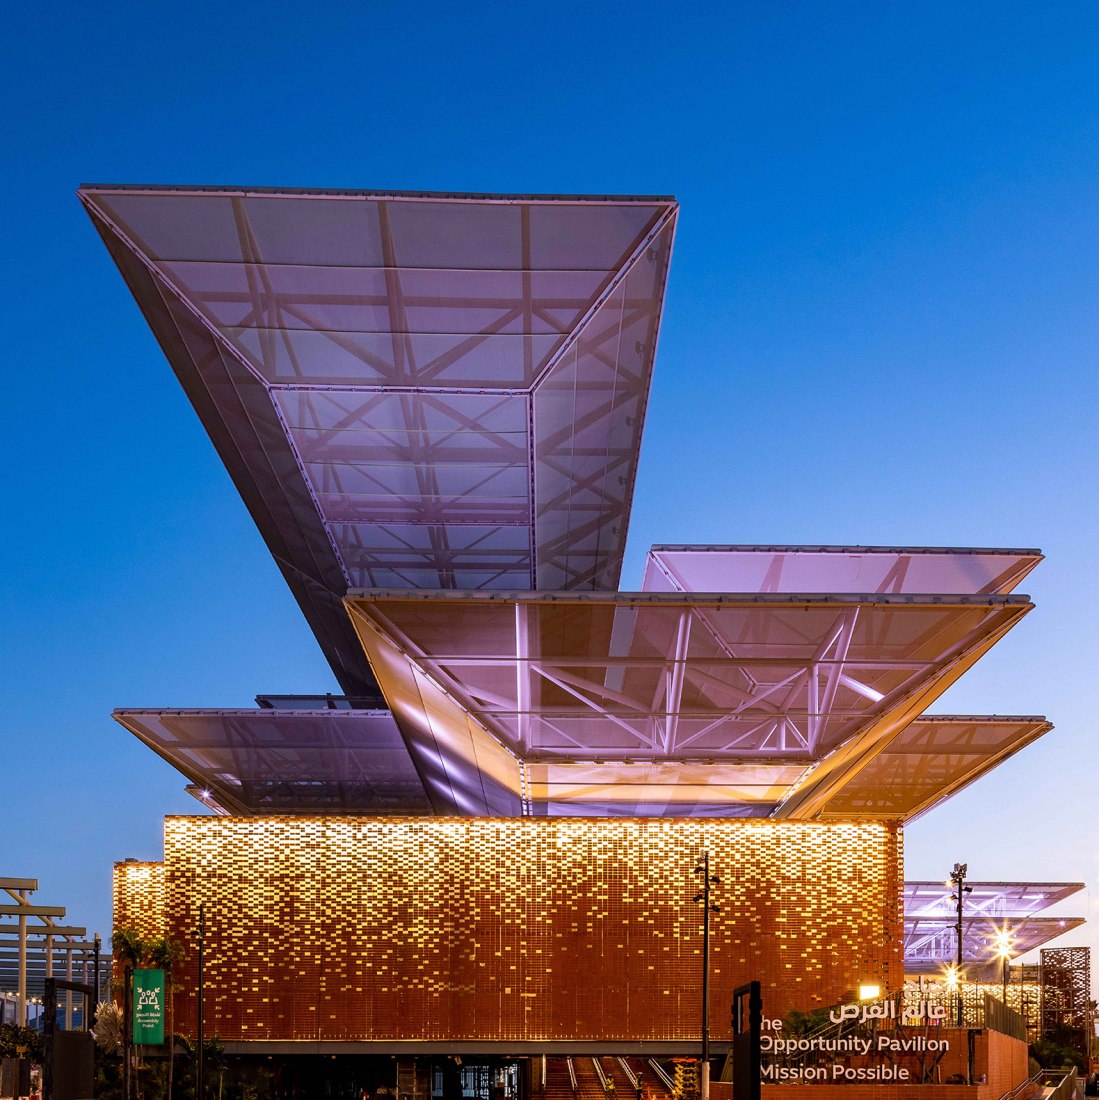 Mission Possible - El Pabellón de las Oportunidades por AGi architects. Fotografía por Expo 2020 Dubai.